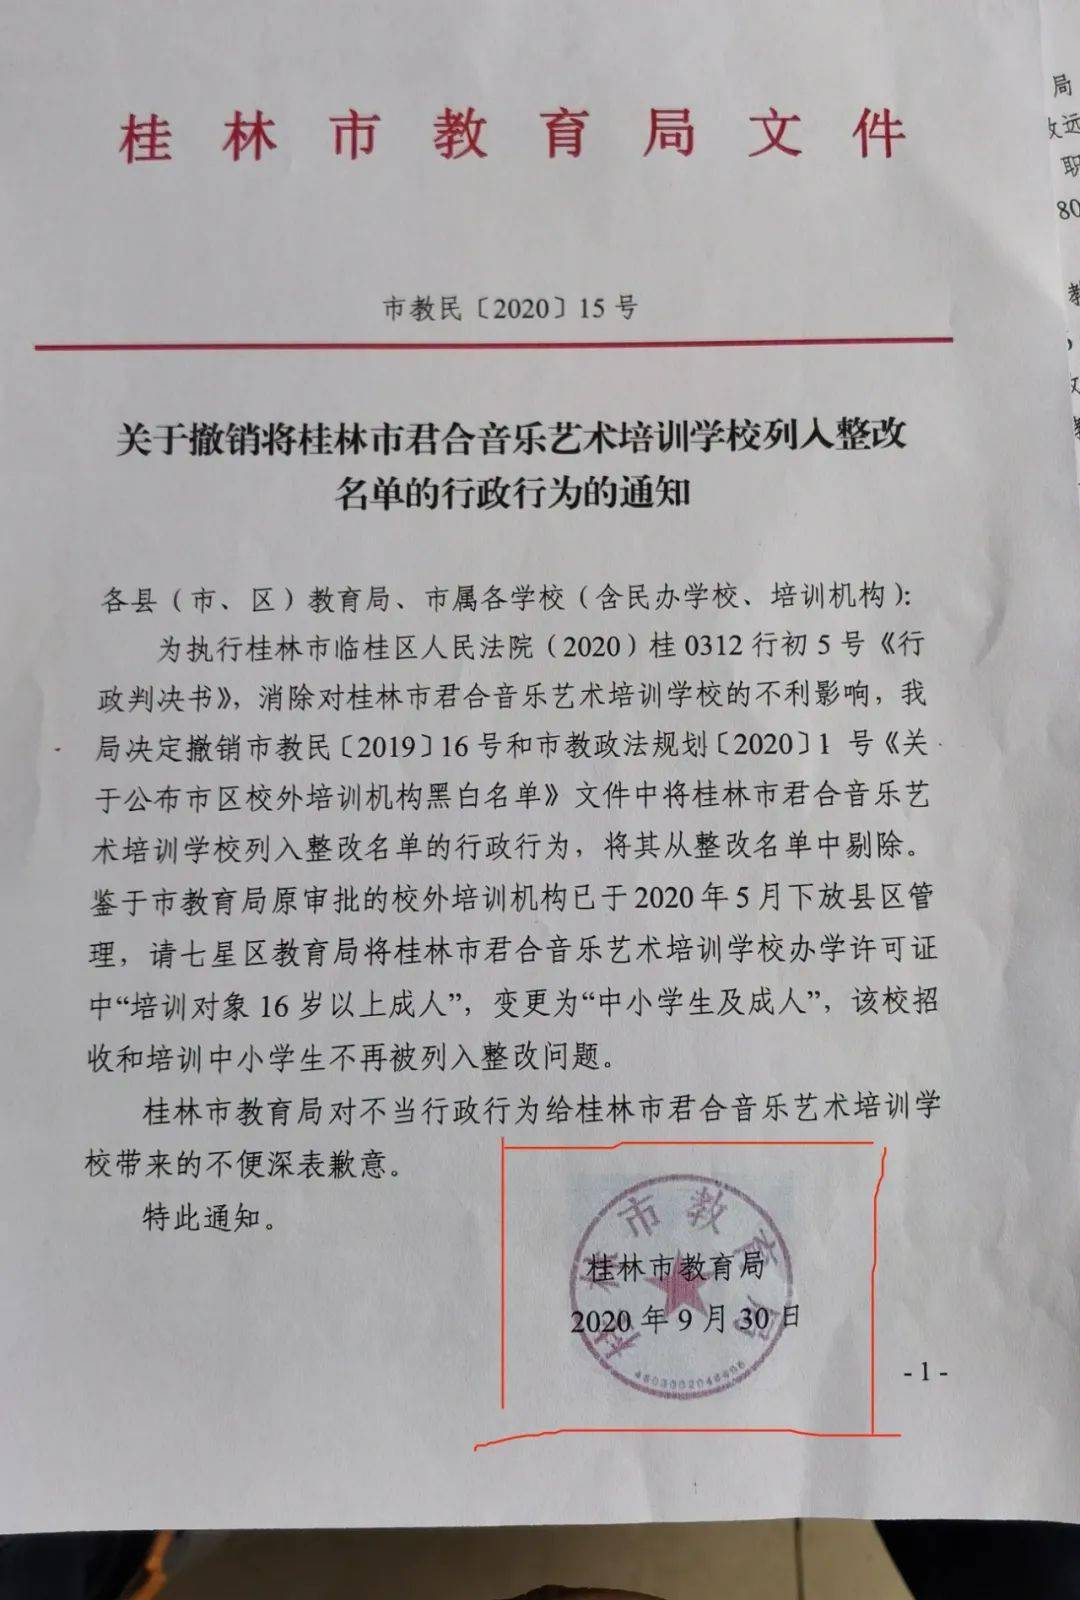 桂林这家机构厉害了!状告桂林教育局胜诉后继续起诉